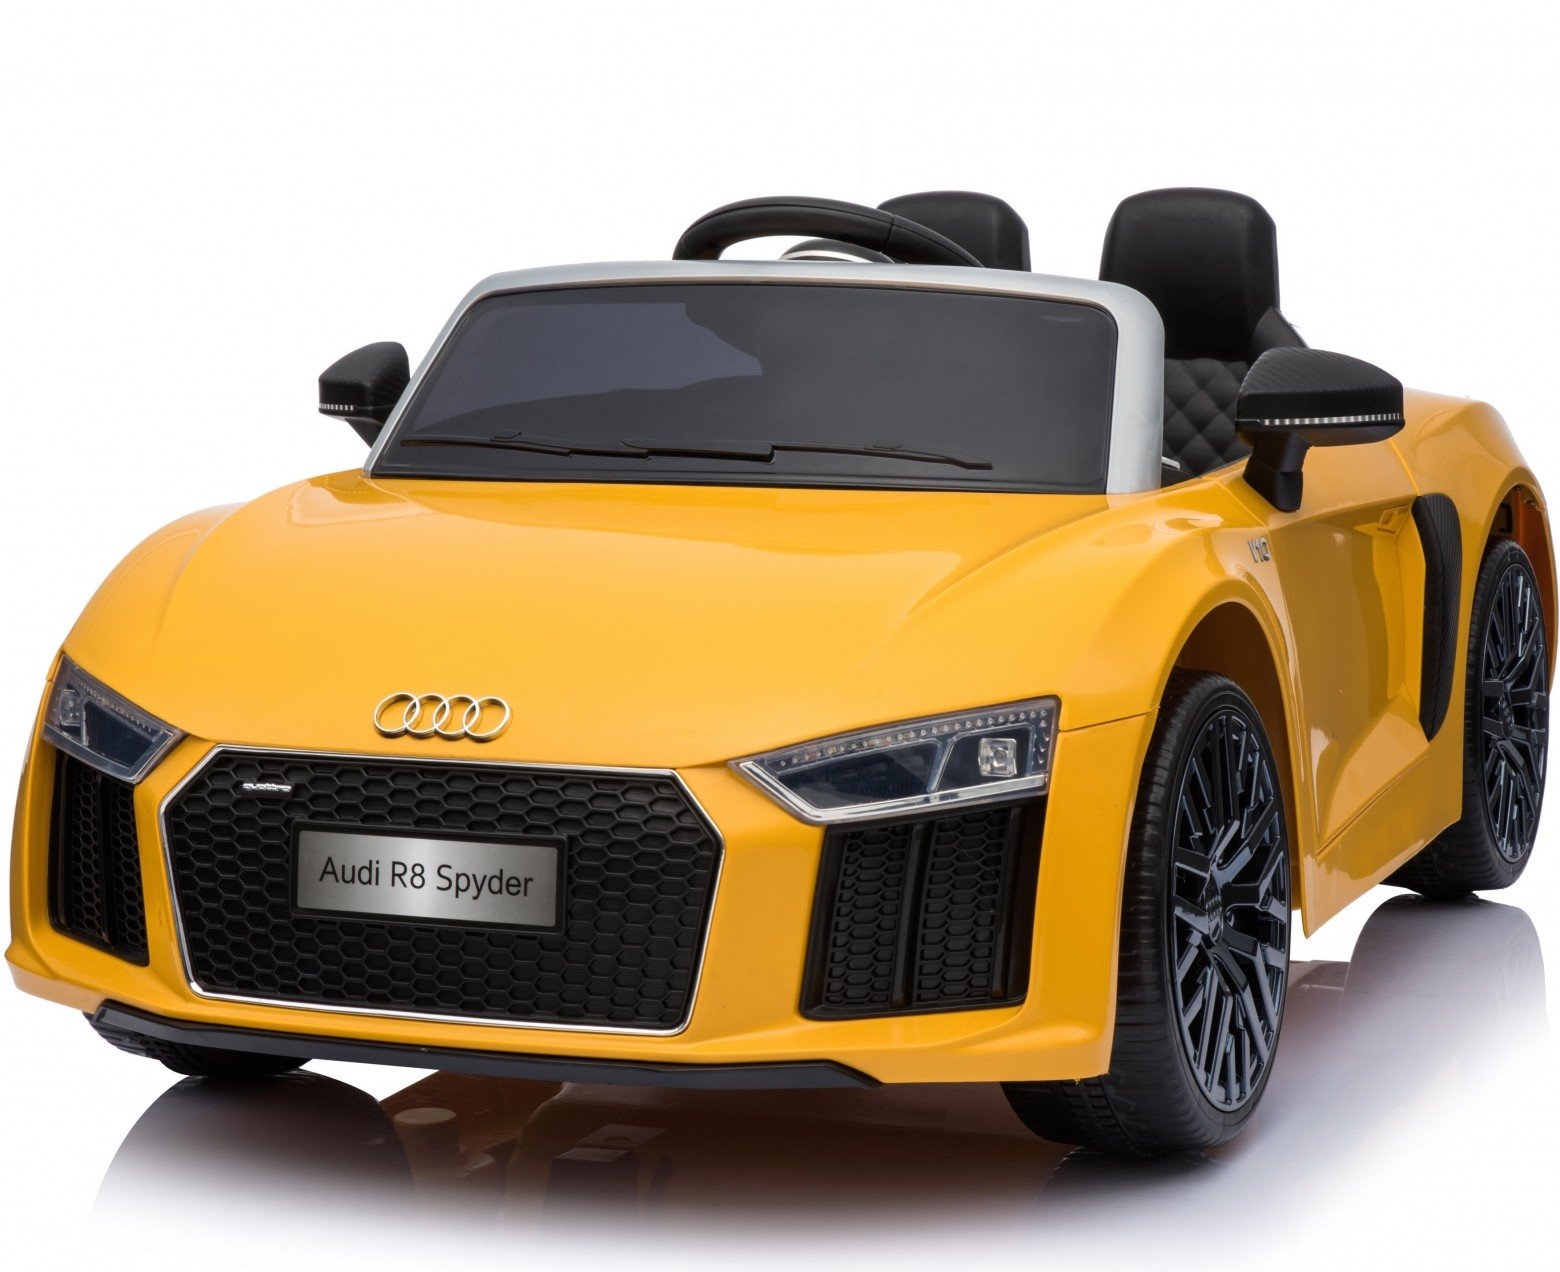 New Shape Licensed Audi R8 Spyder 12V ChildrenÛªs Electric Ride On Toy Car – Yellow